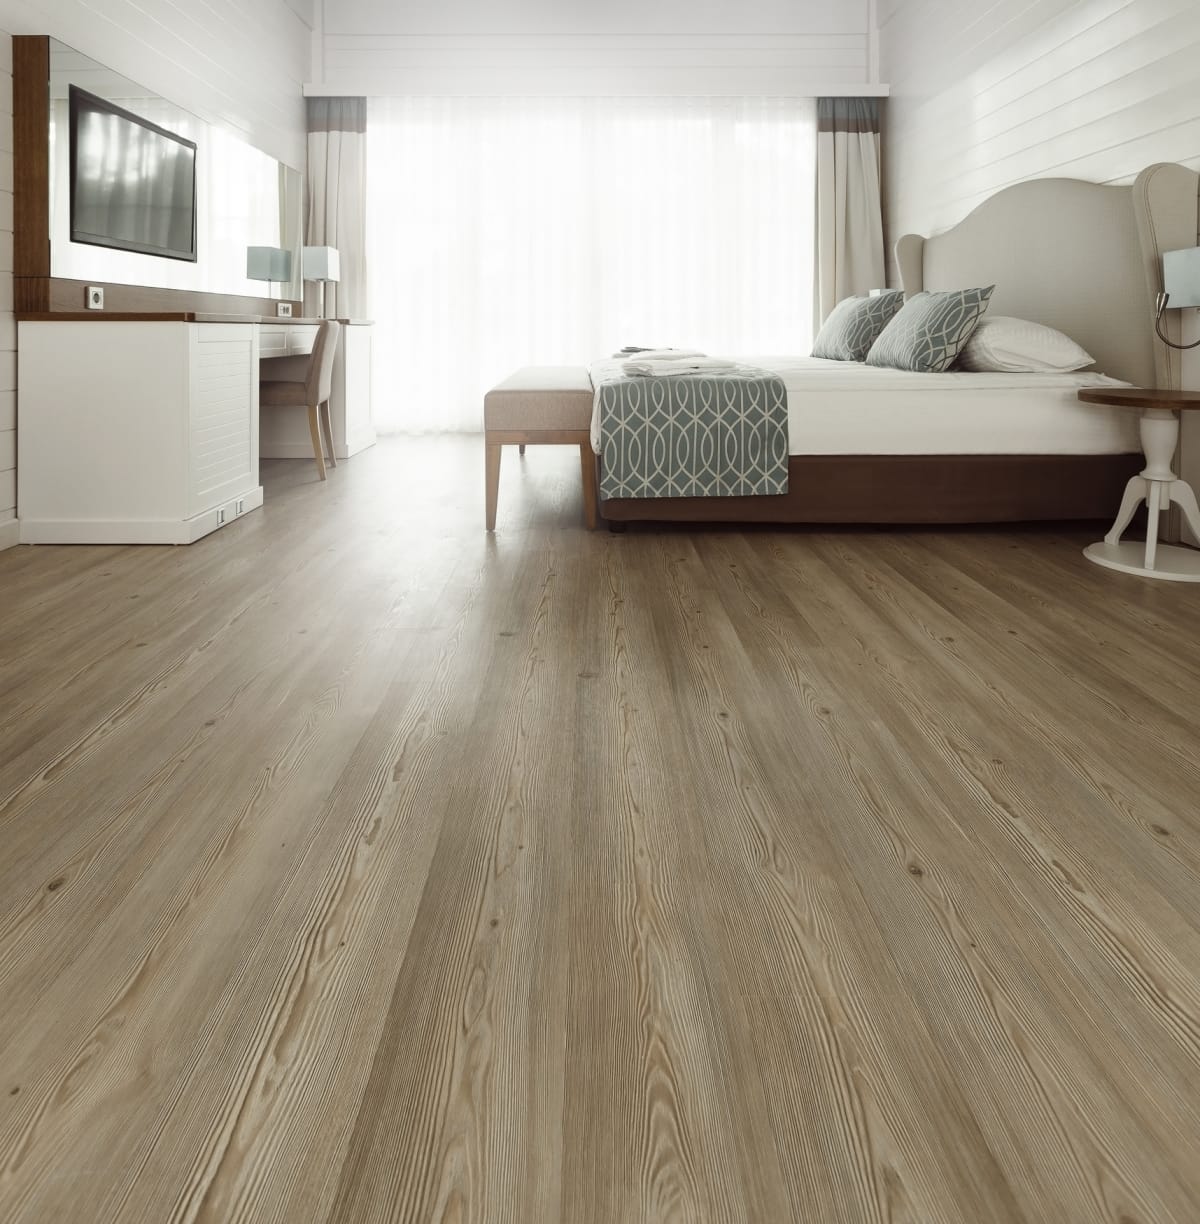 Hardwood floor in a bedroom